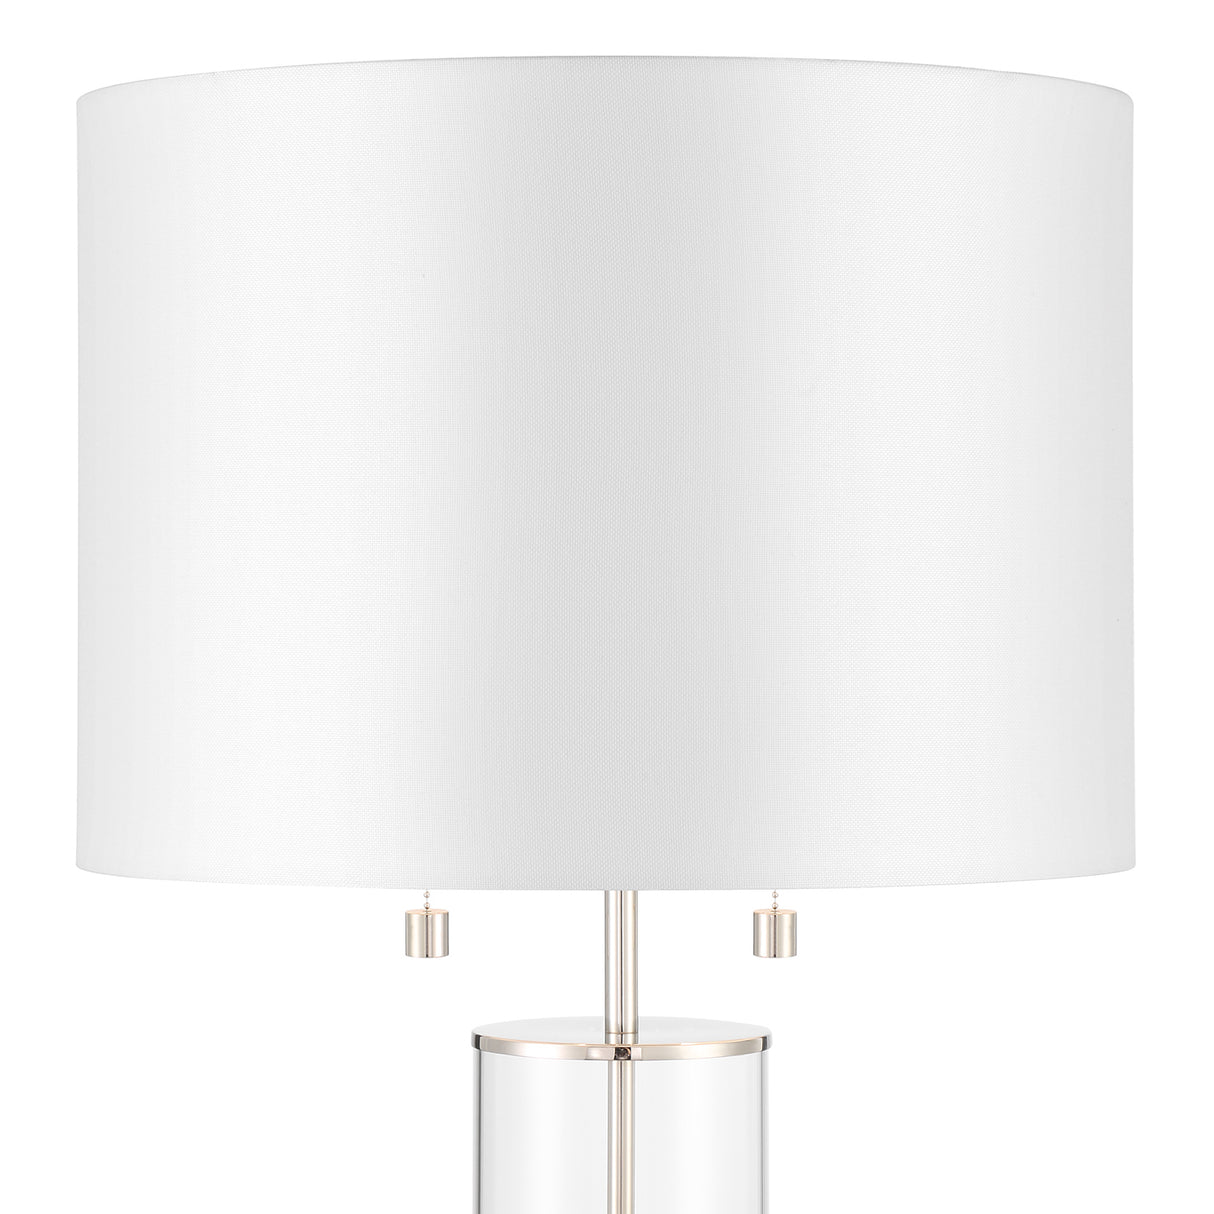 Laurel Glass Cylinder Table Lamp, Polished Nickel